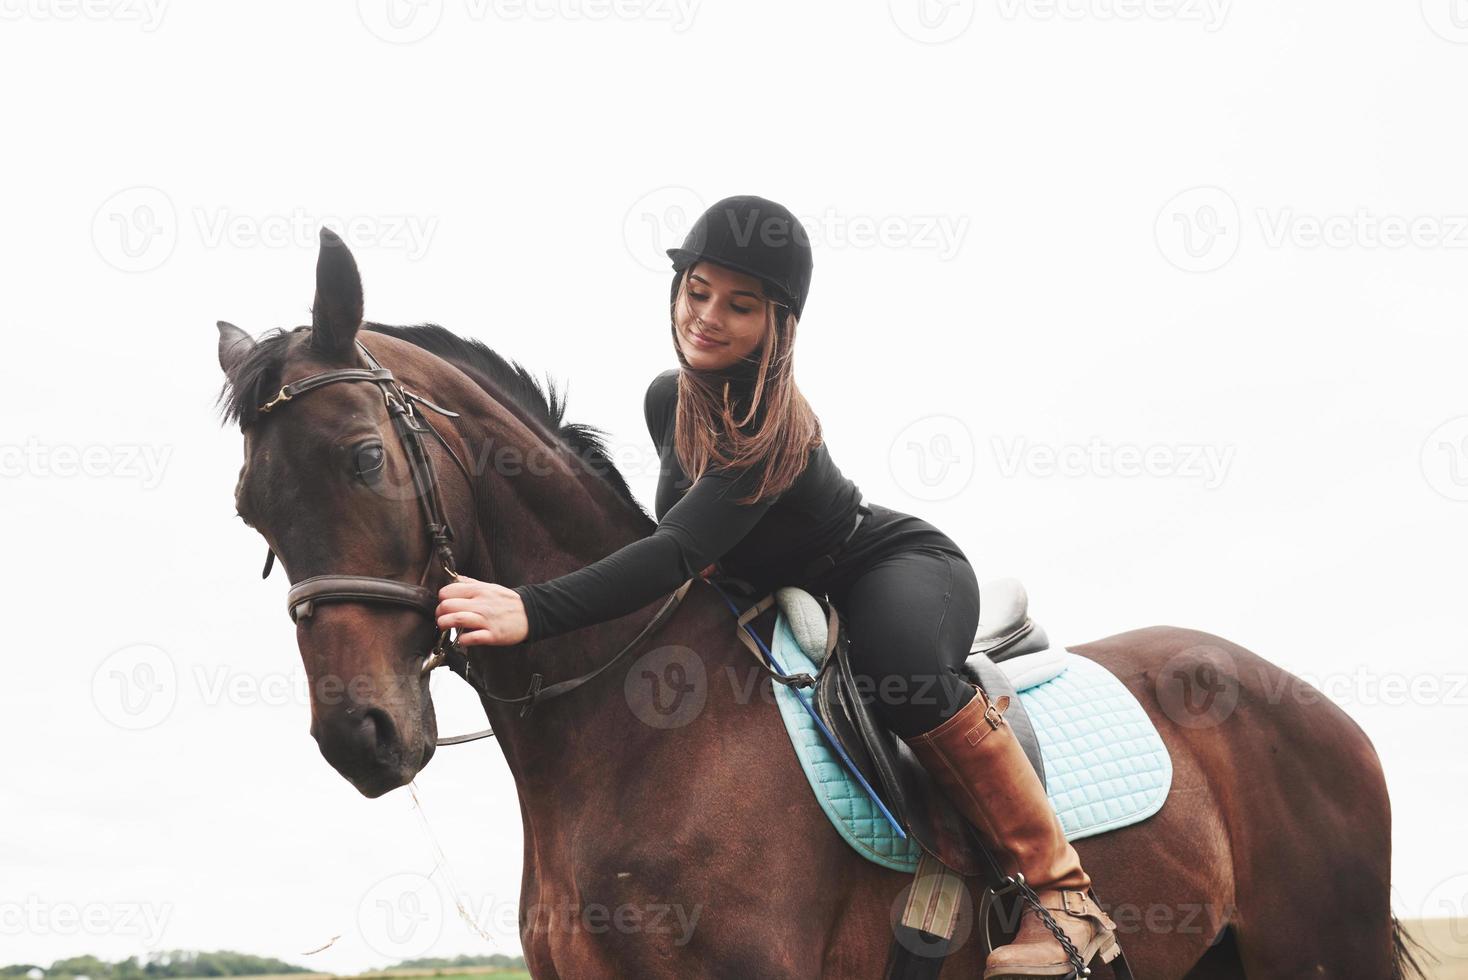 giovane ragazza carina - a cavallo, sport equestre in primavera foto